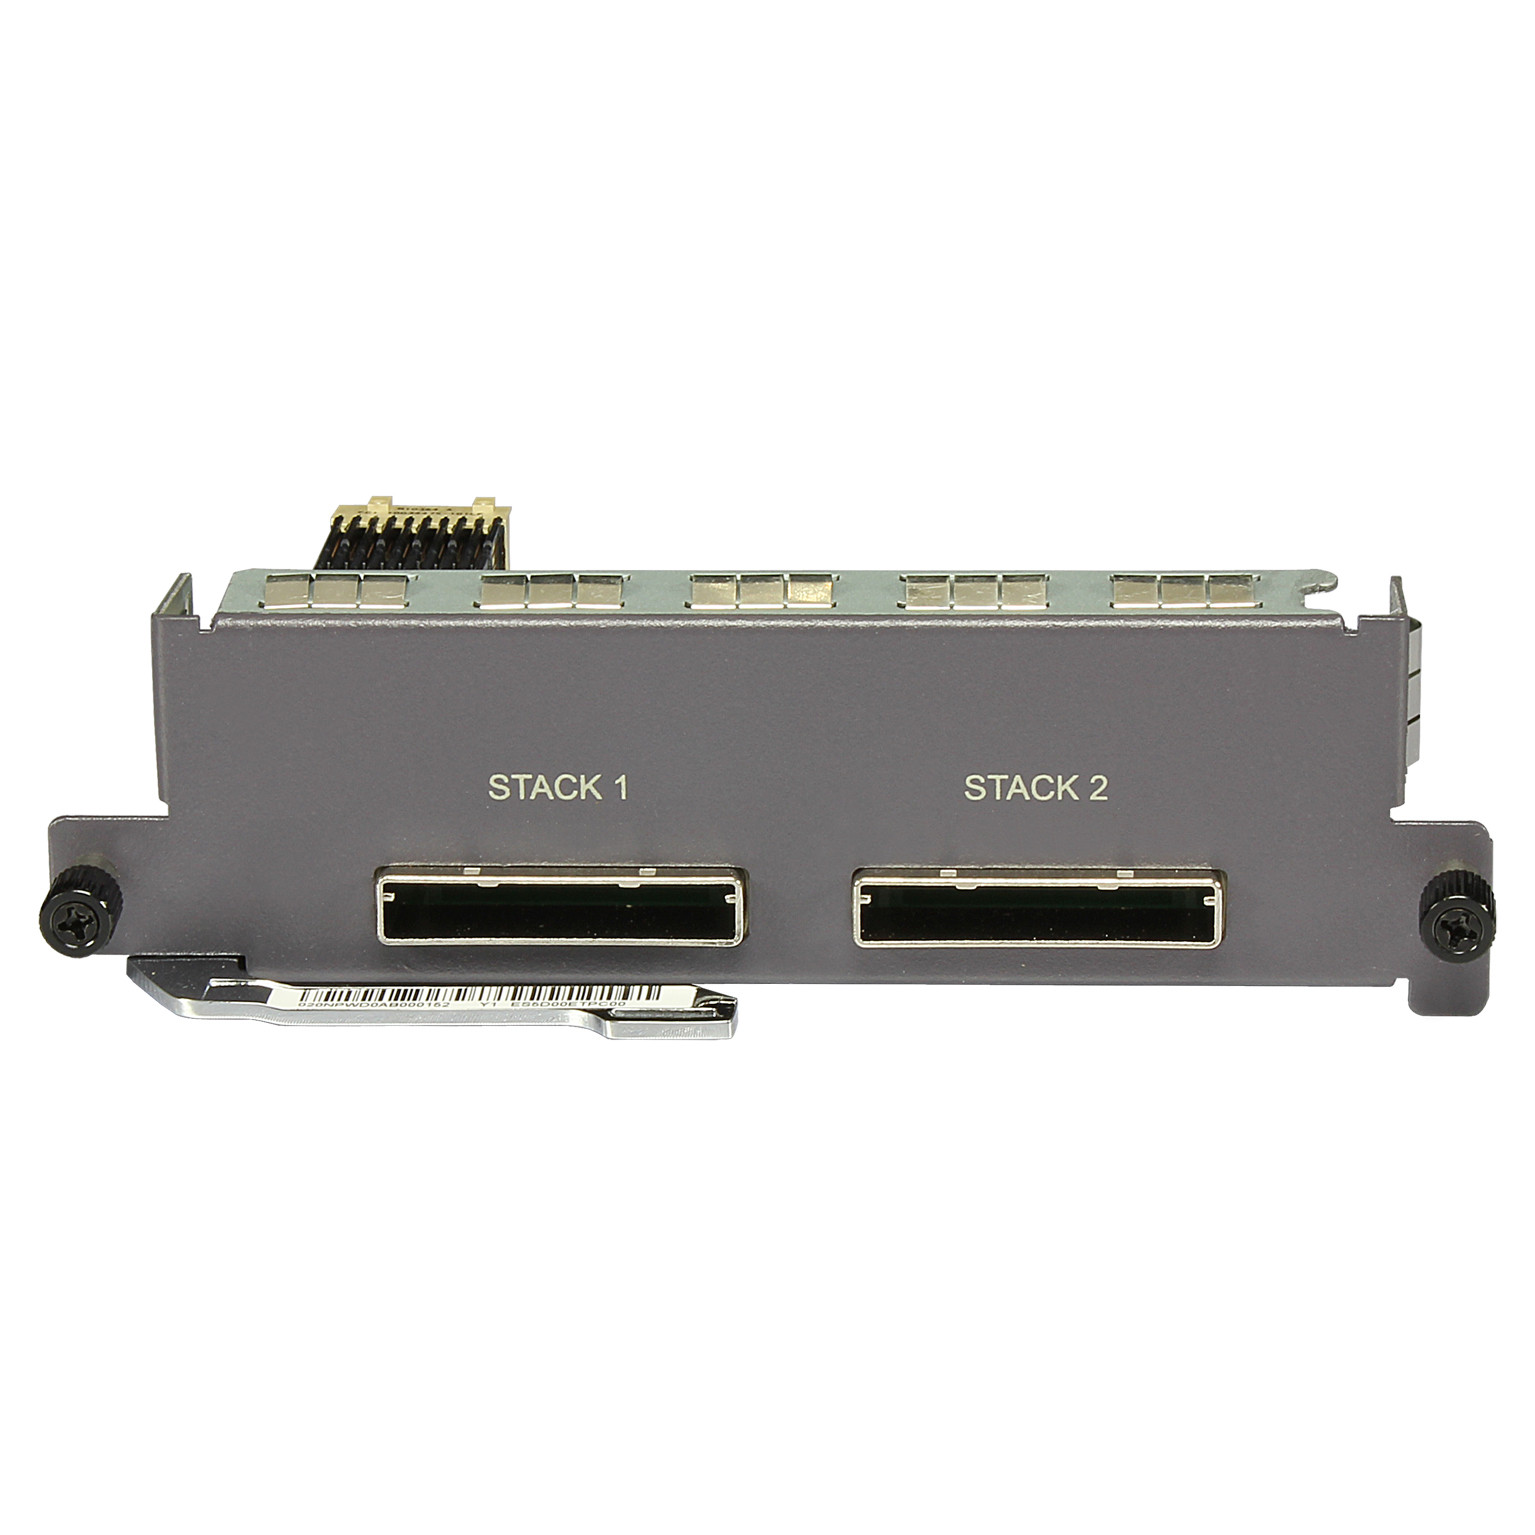 华为接口卡 02319959 ES5D001VST00 以太网堆叠接口板(含堆叠卡,100cm堆叠电缆)